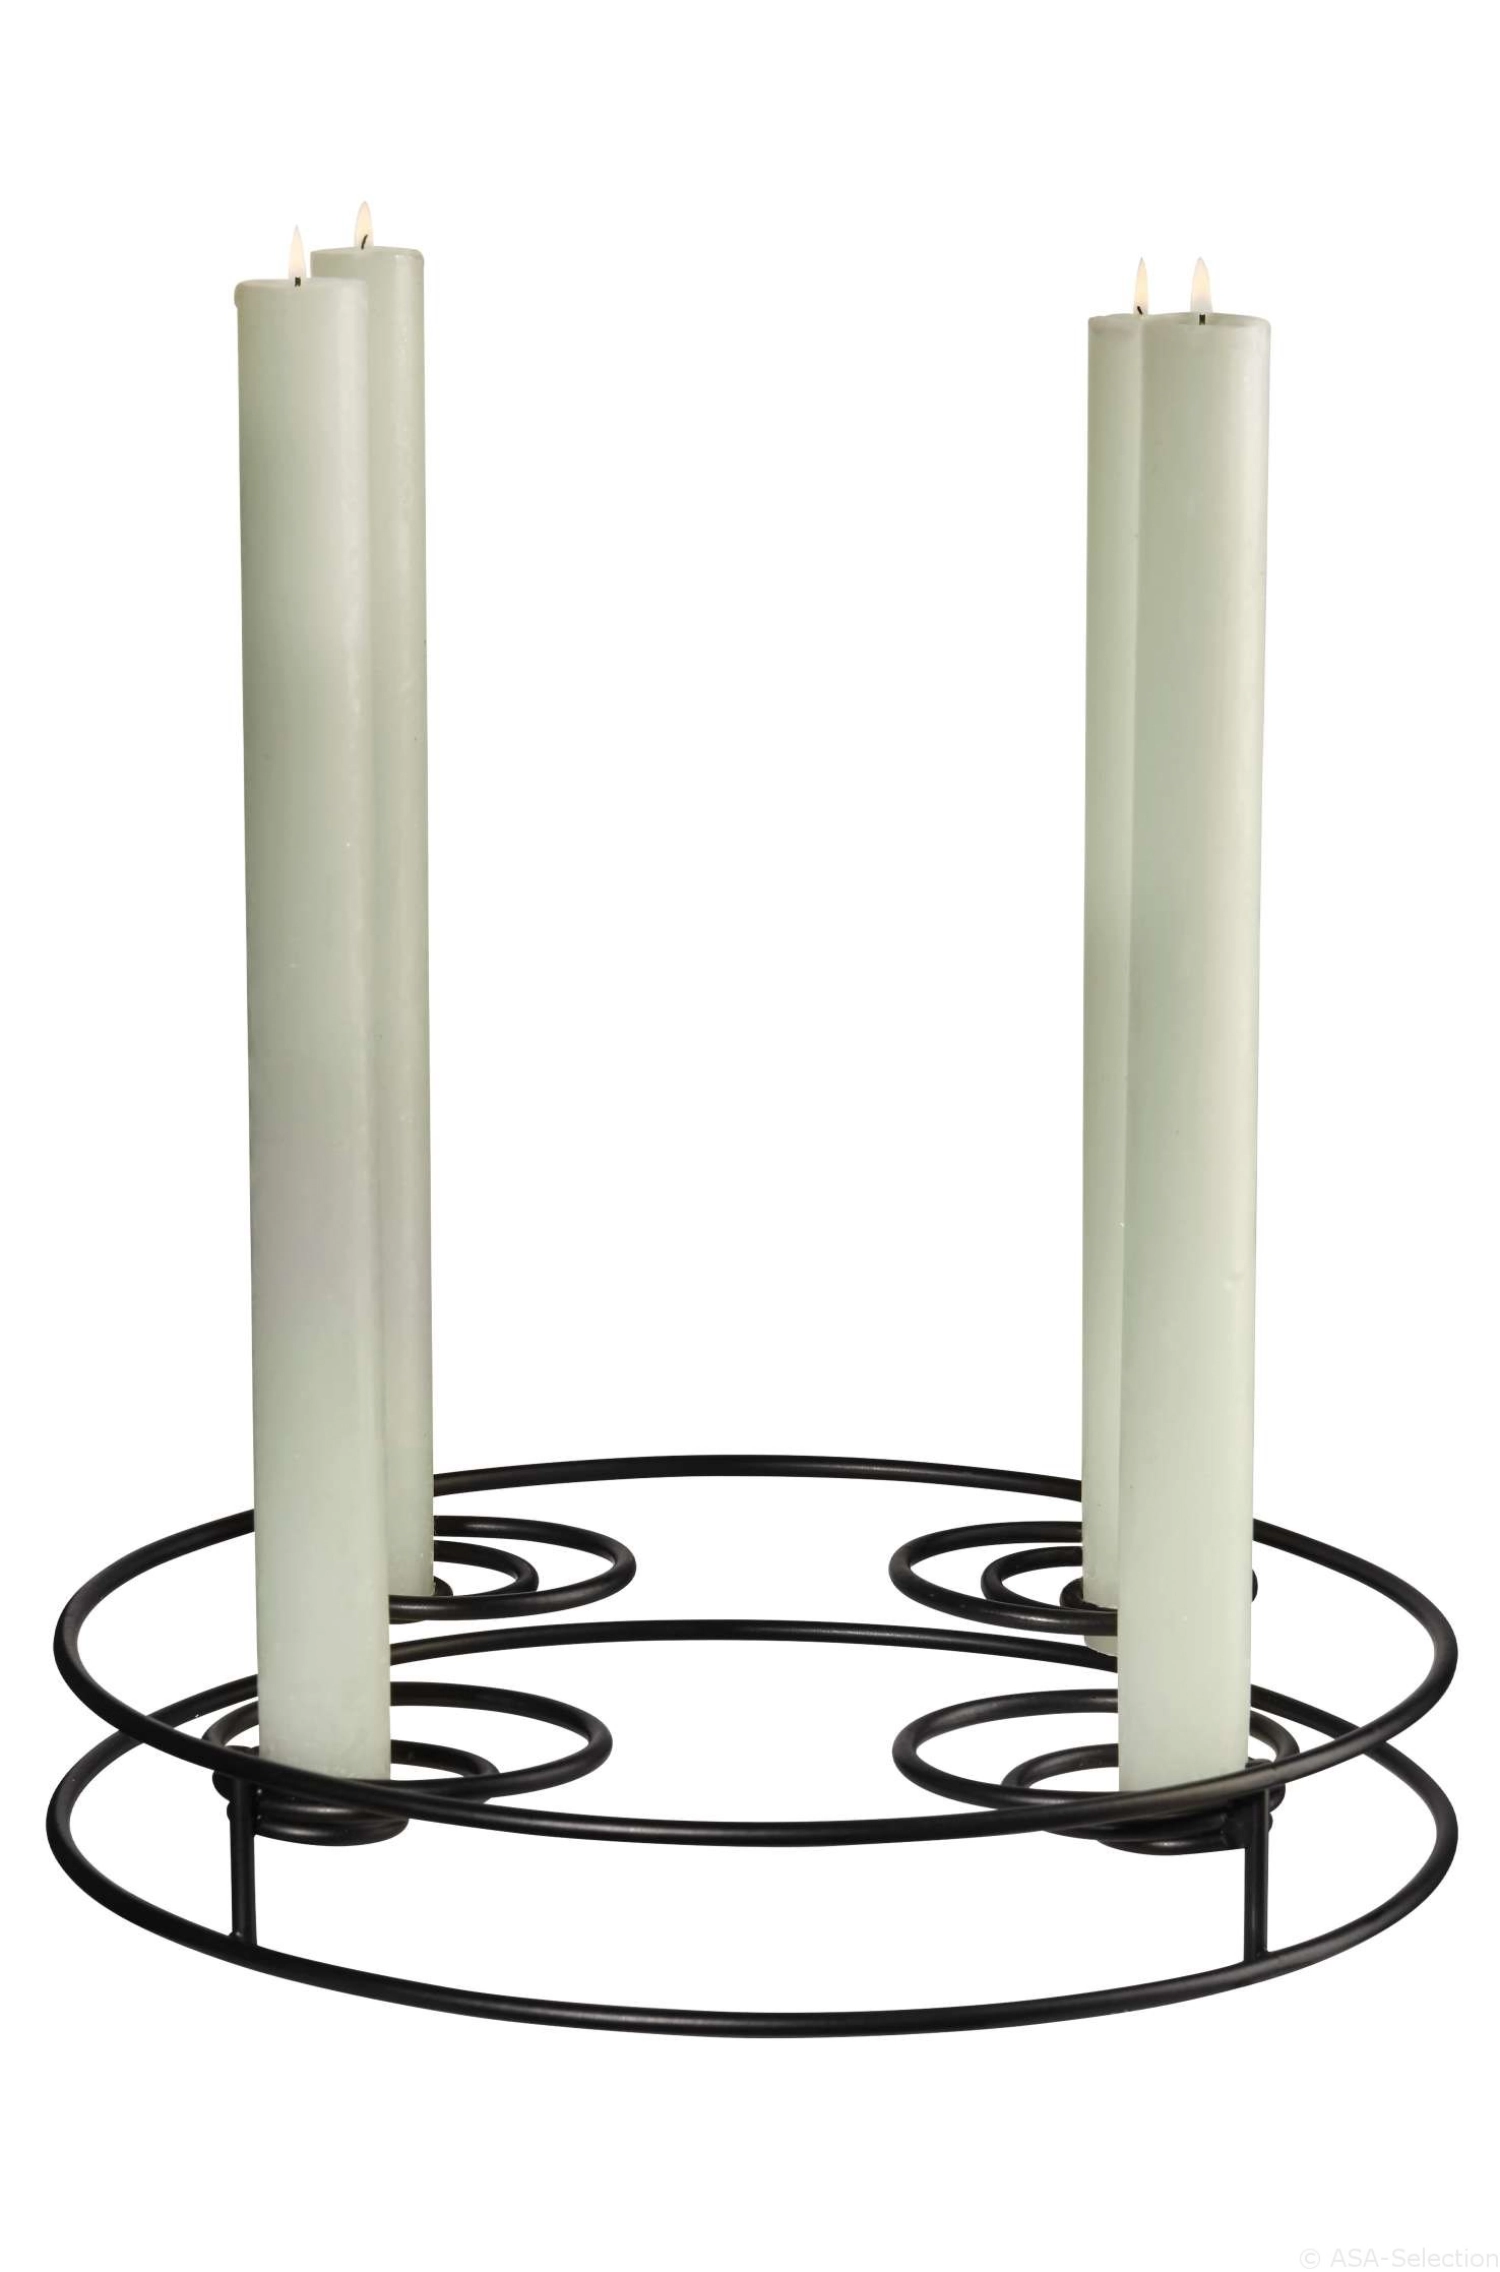 Xmas Kerzenständer rund, multifunktional